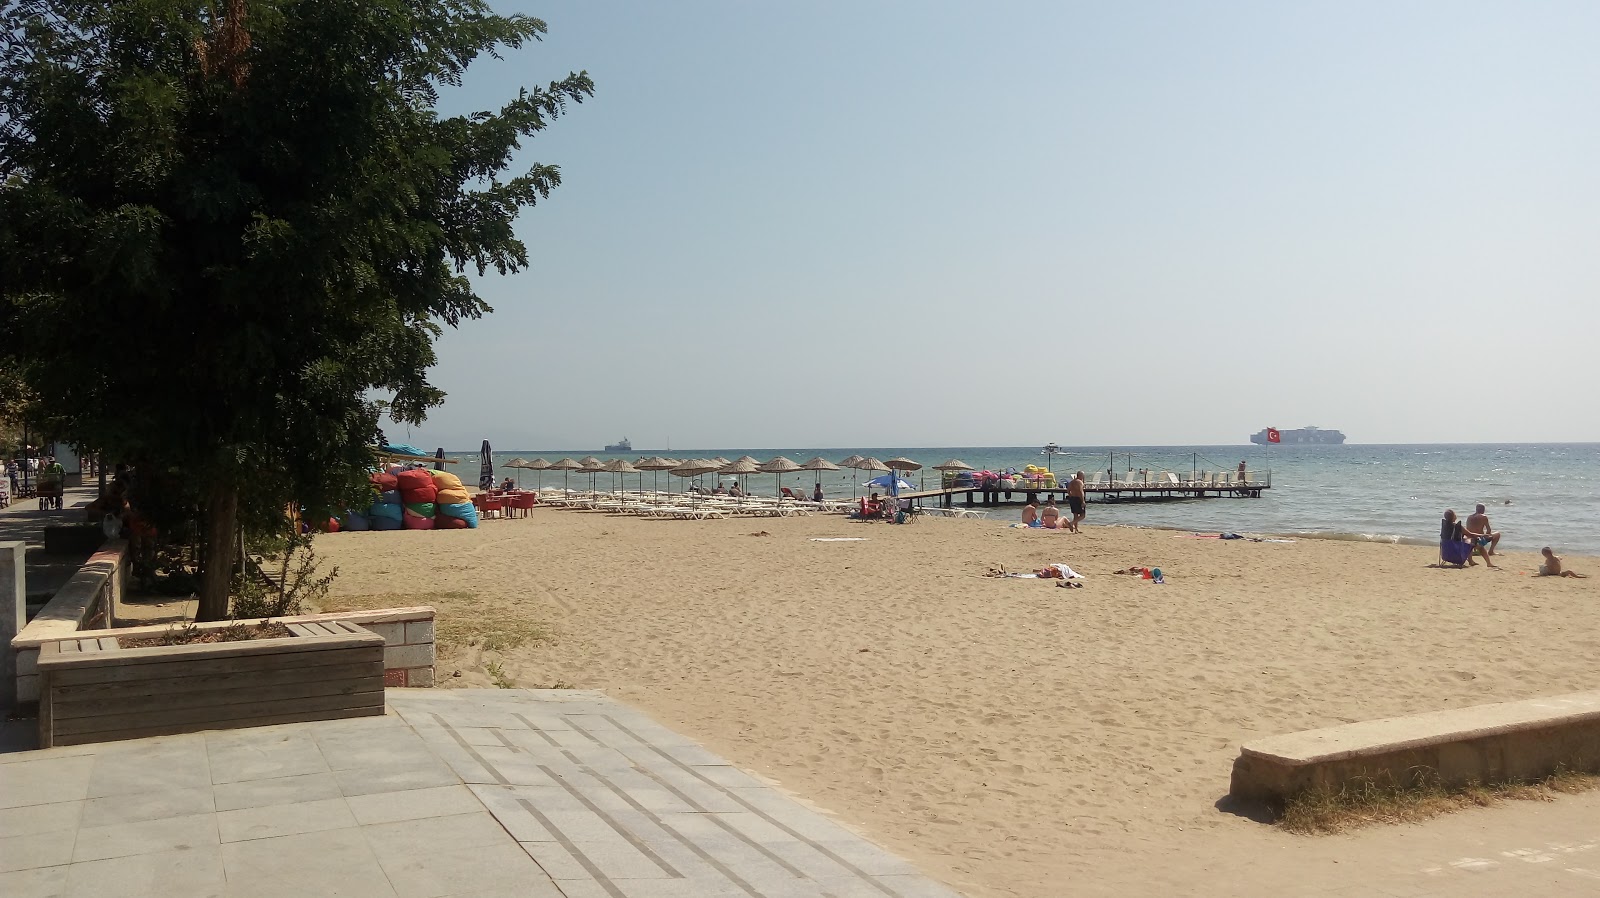 Sarkoy beach II'in fotoğrafı kahverengi kum yüzey ile